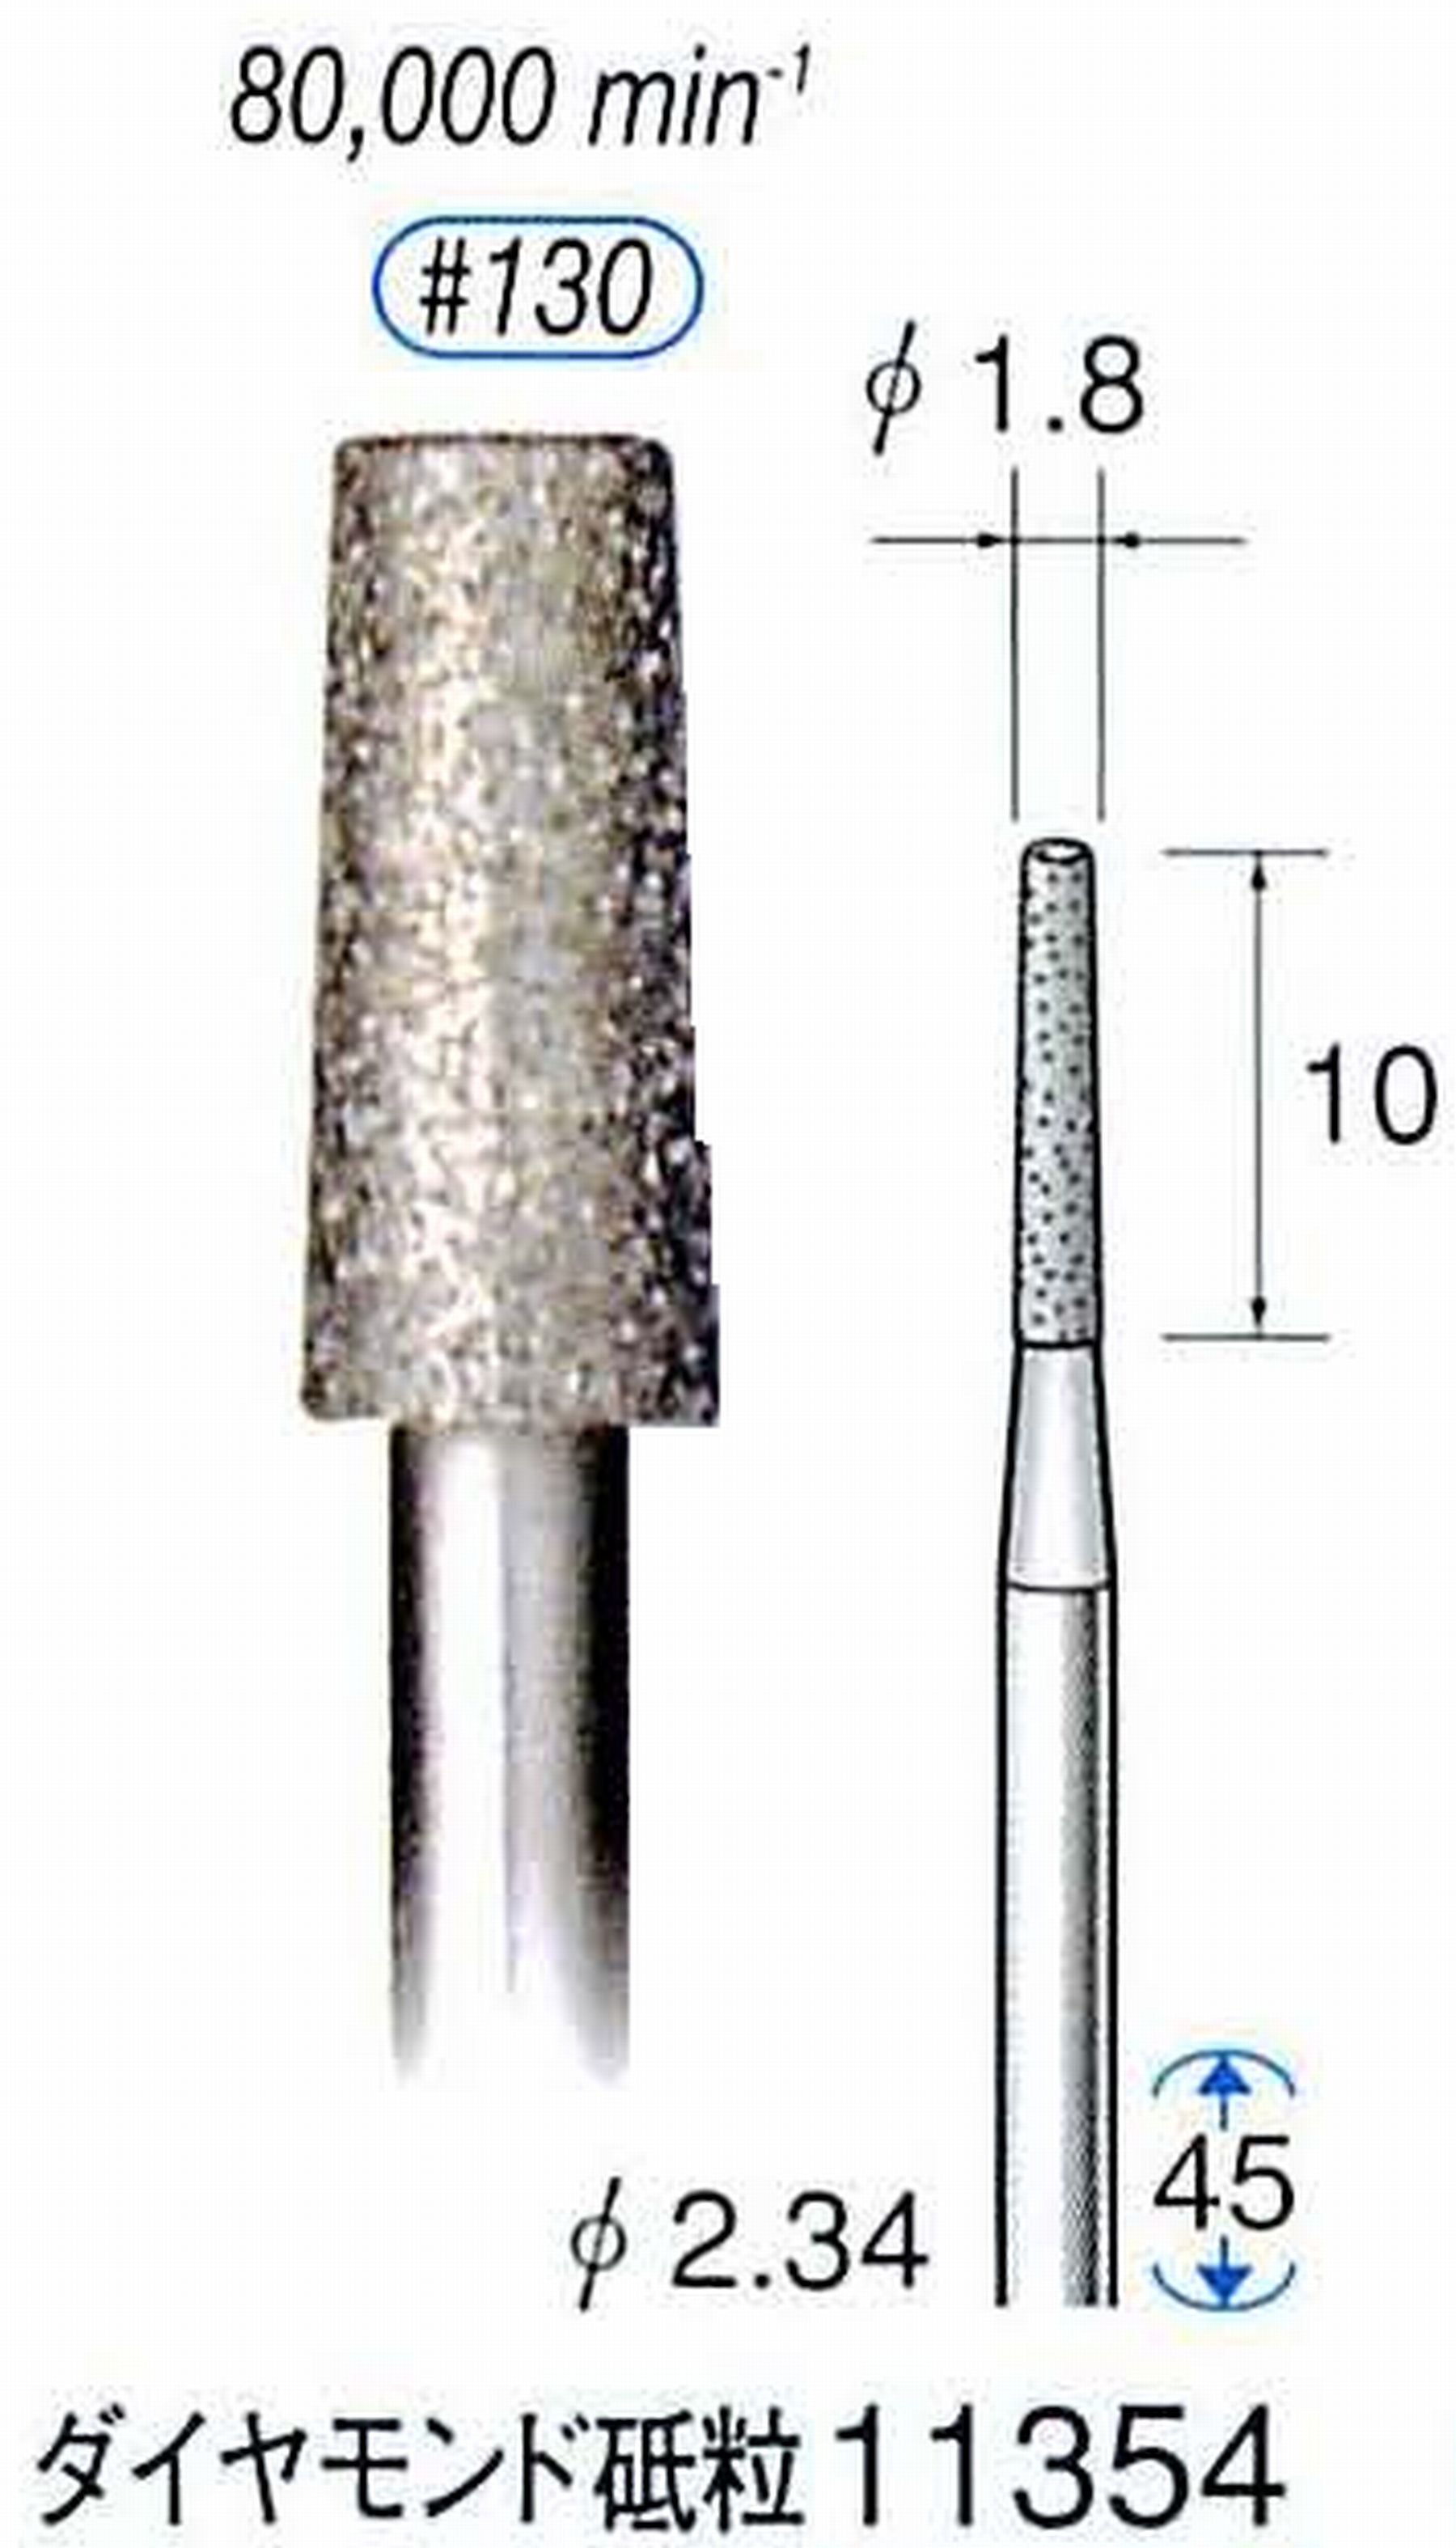 ナカニシ/NAKANISHI 電着ダイヤモンドバー ダイヤモンド砥粒 軸径(シャンク)φ2.34mm 11354